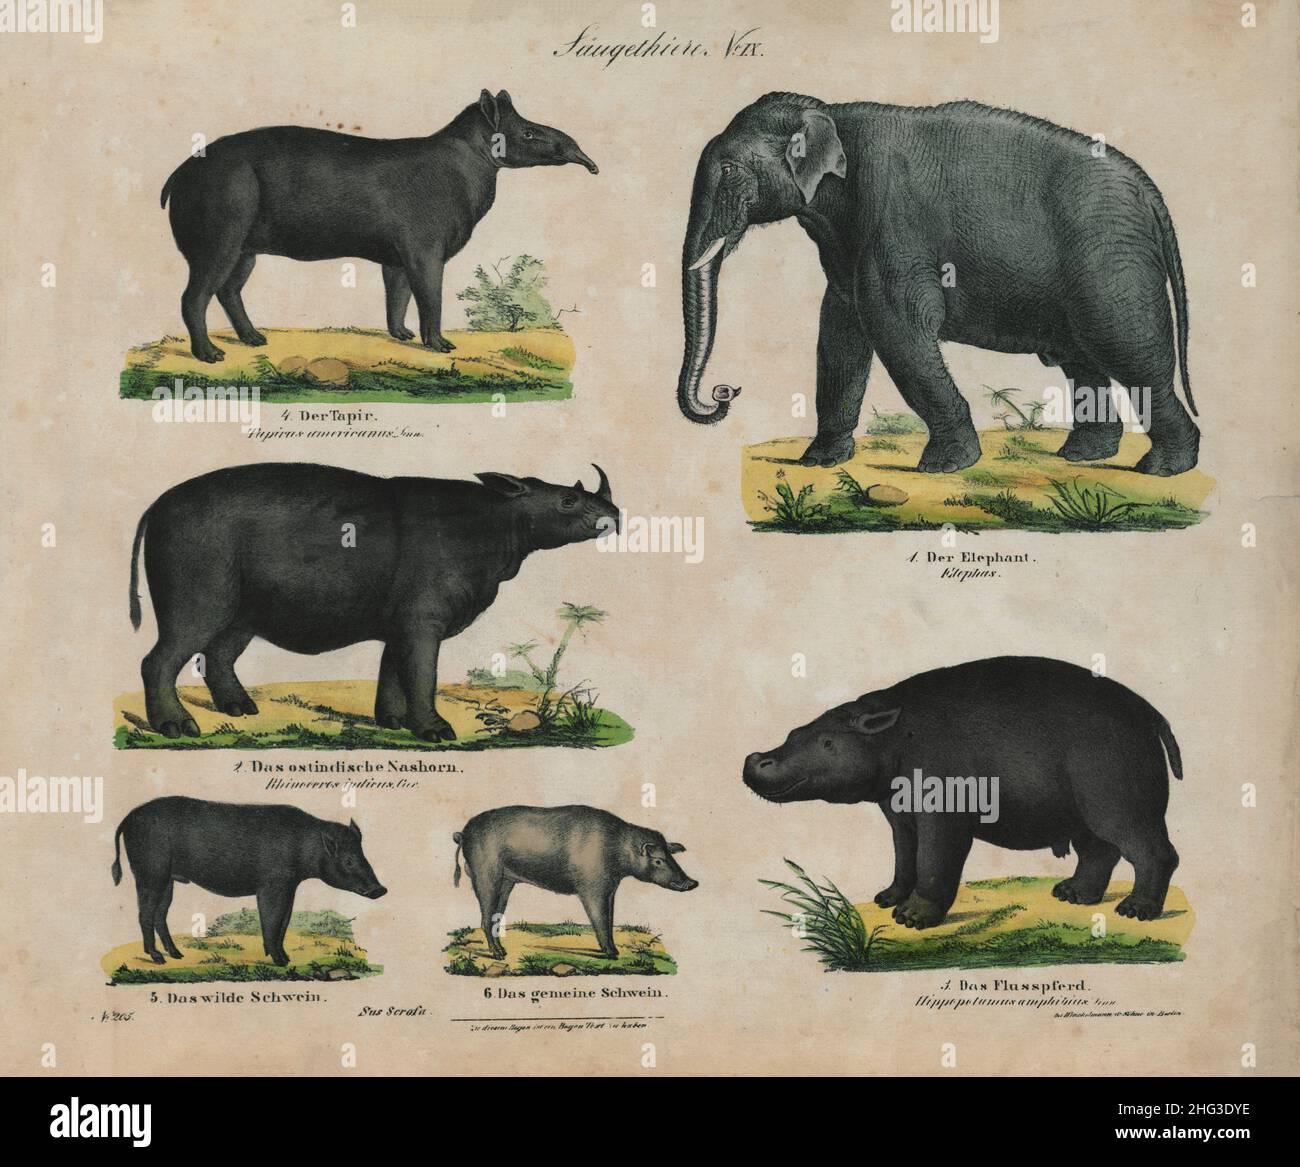 Illustrazioni vintage a colori di mammiferi. N. IX 1850 la litografia a colori del 19th° secolo di cinghiale, maiale selvatico, rinoceronte, ippopotamo, tapir, elefante Foto Stock